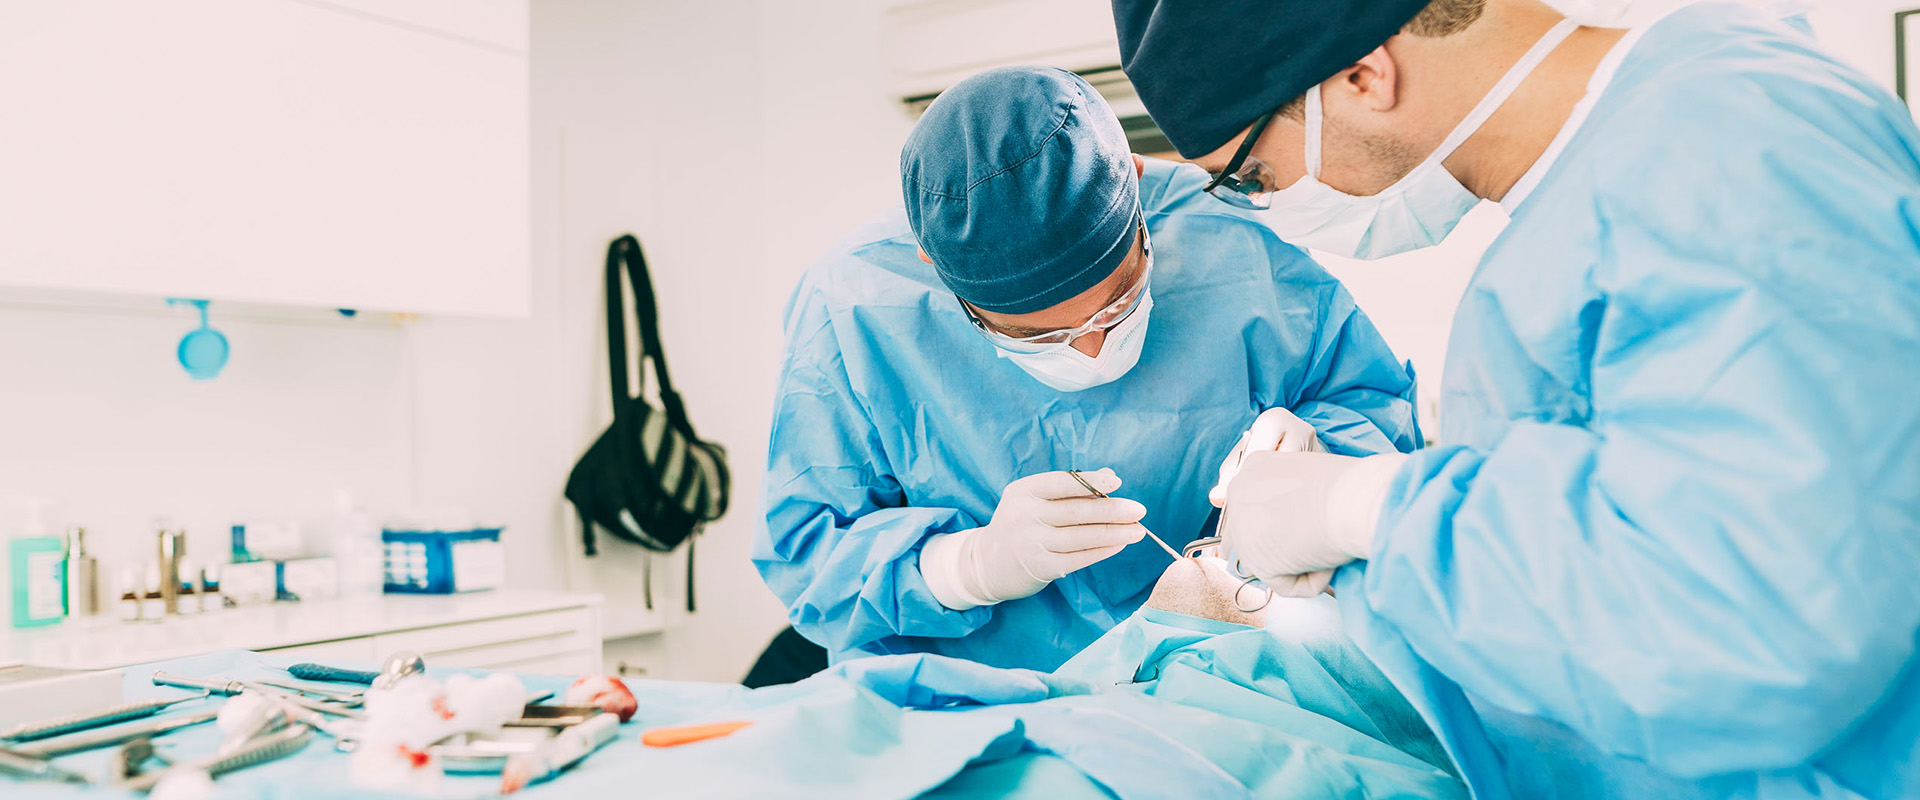 Zwei Kieferorthopäden der Kieferorthopädischen Chirurgie operieren einen Patienten. Das Implantatzentrum Brückner ist auf Kieferorthopädie und Oralchirurgie spezialisiert.